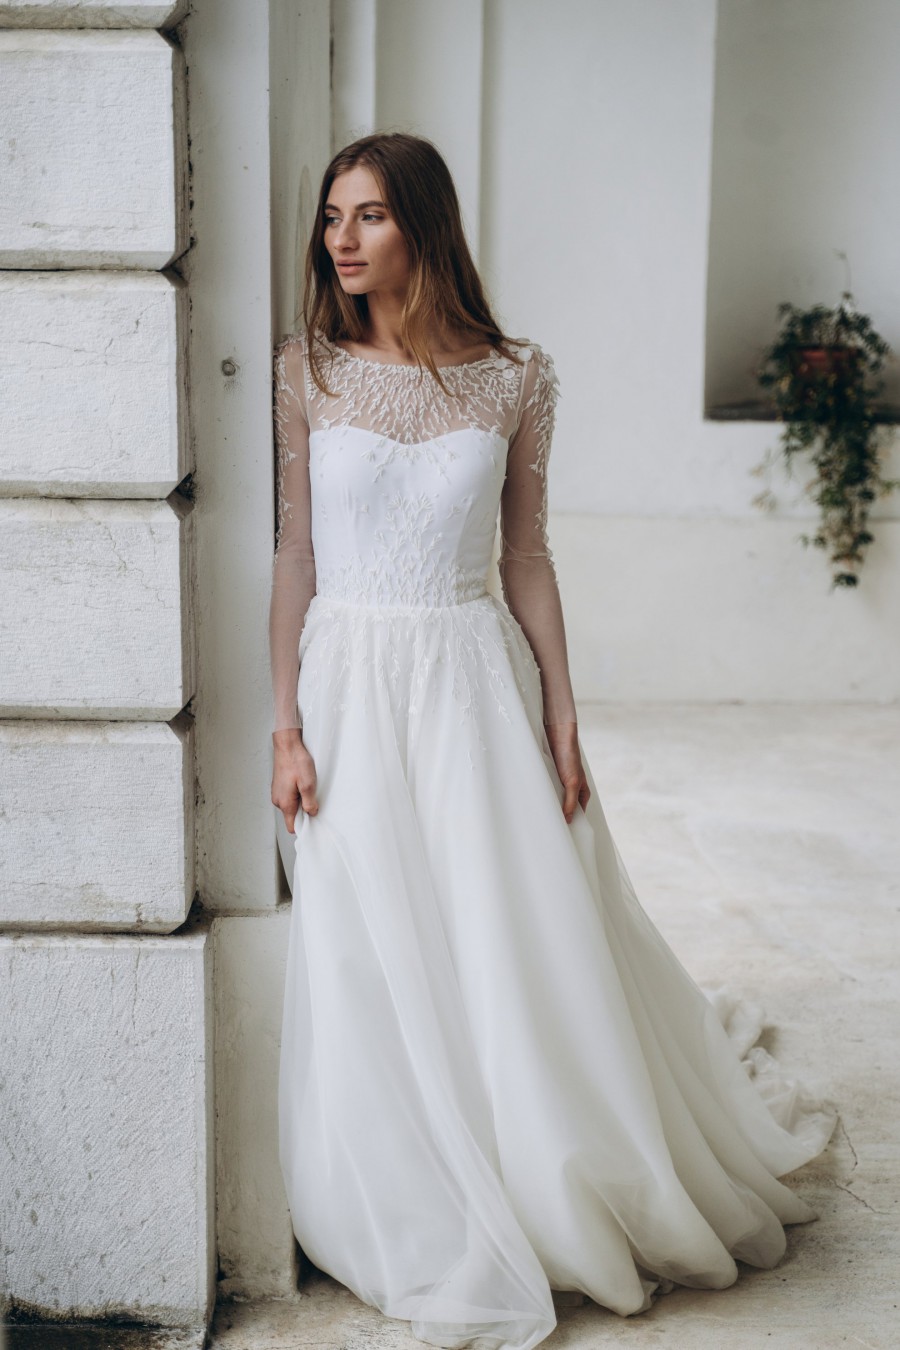 25 Long Sleeve Winter Wedding Dresses – Stillwhite Blog